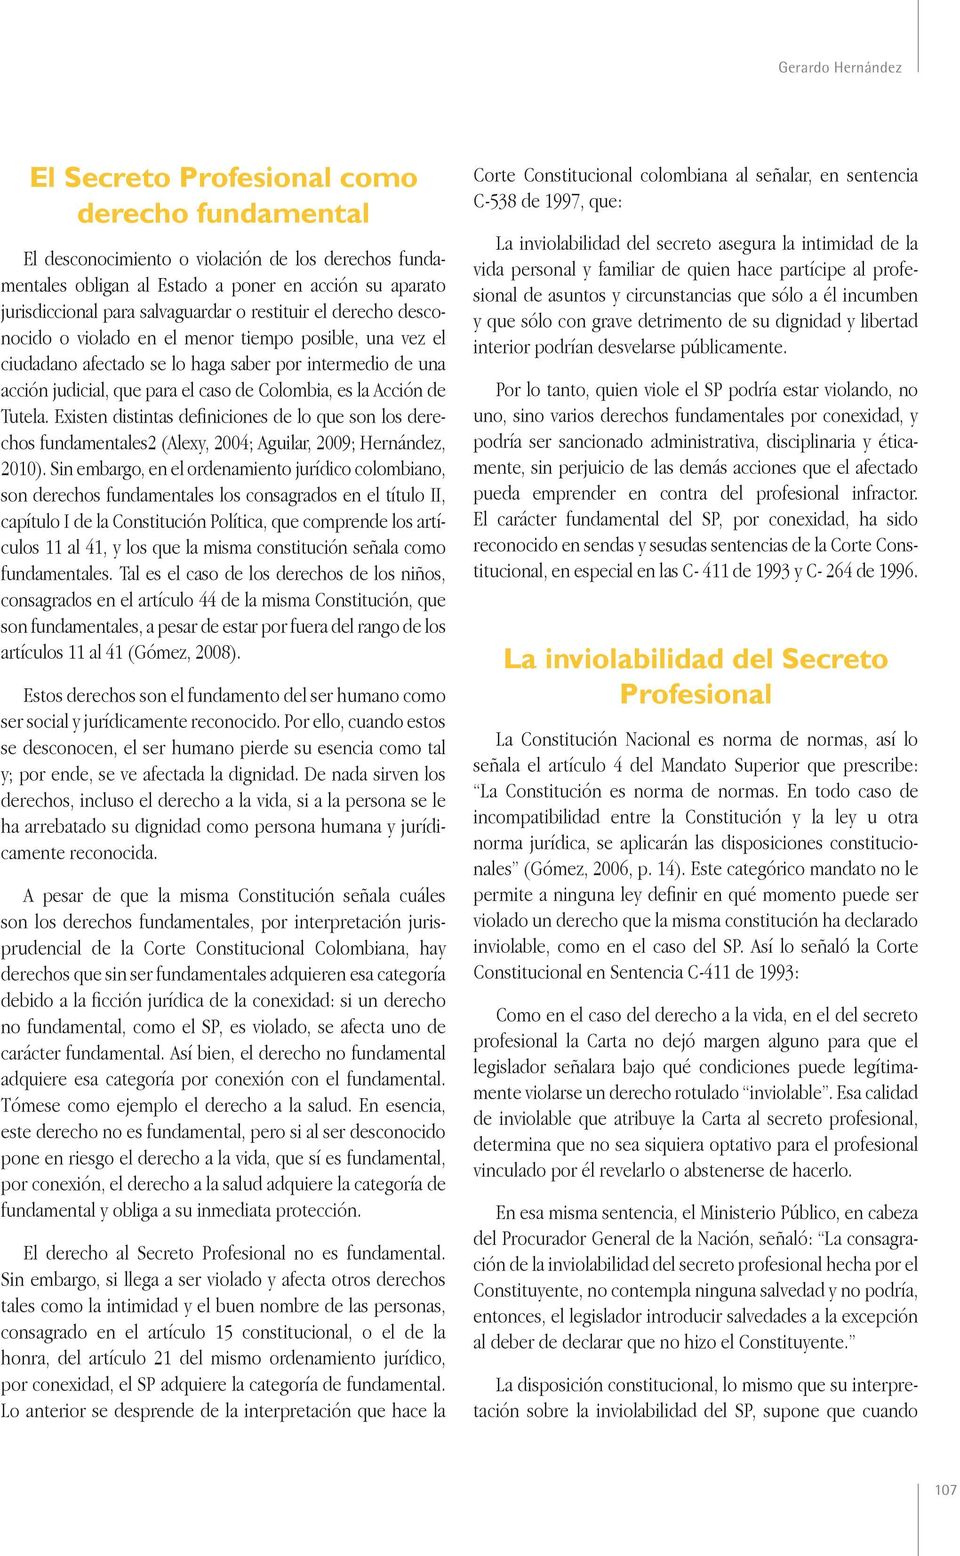 Colombia, es la Acción de Tutela. Existen distintas definiciones de lo que son los derechos fundamentales2 (Alexy, 2004; Aguilar, 2009; Hernández, 2010).